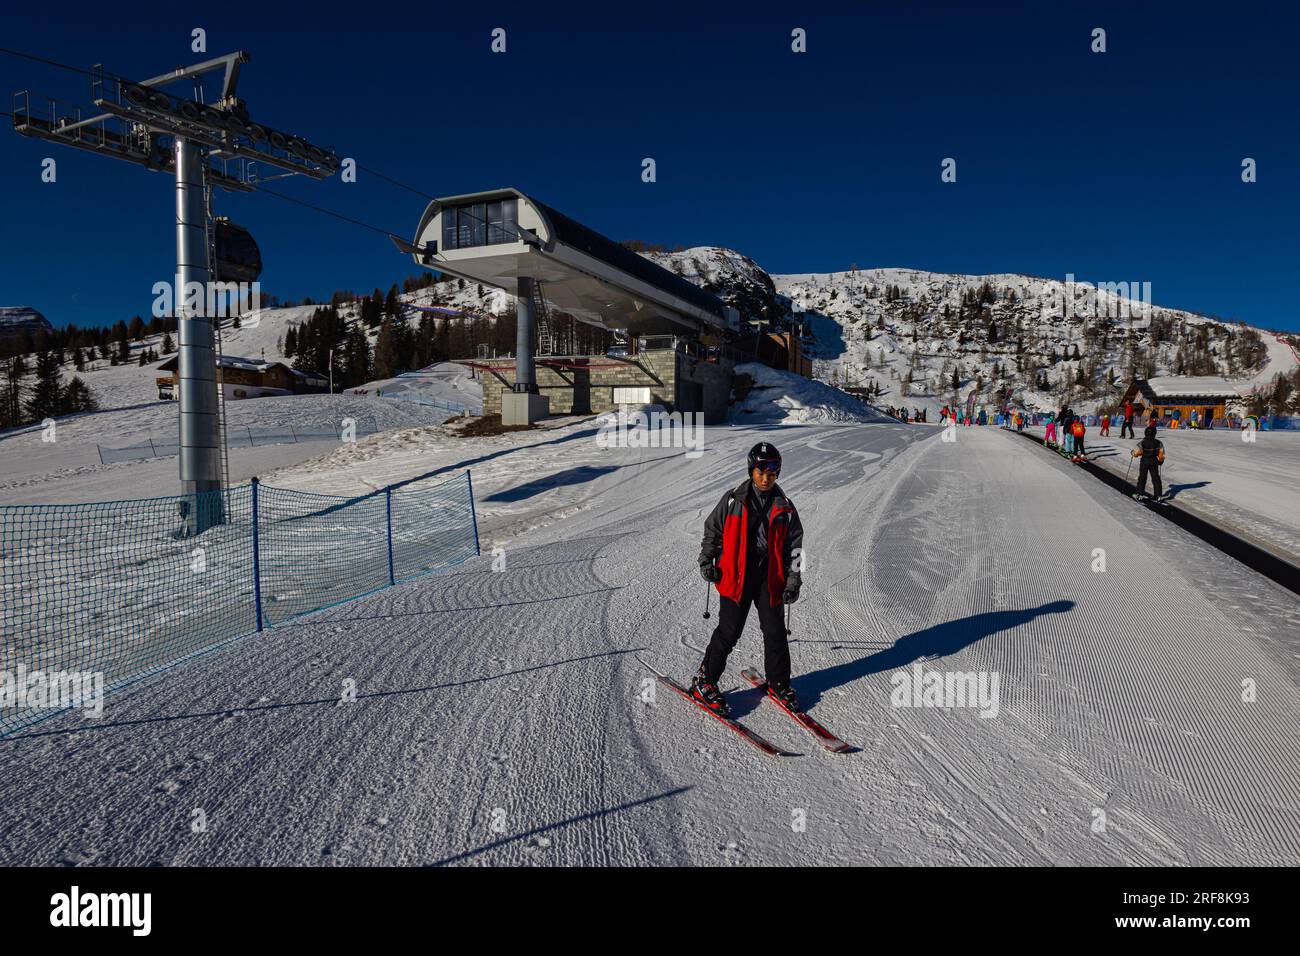 Falcade, Italien - 18. Februar 2023: Junger Mann fährt anmutig die Skipiste hinab, die sich in der Nähe eines Skilifts befindet. Sein Körper lehnt sich nach vorne, während er conf Stockfoto